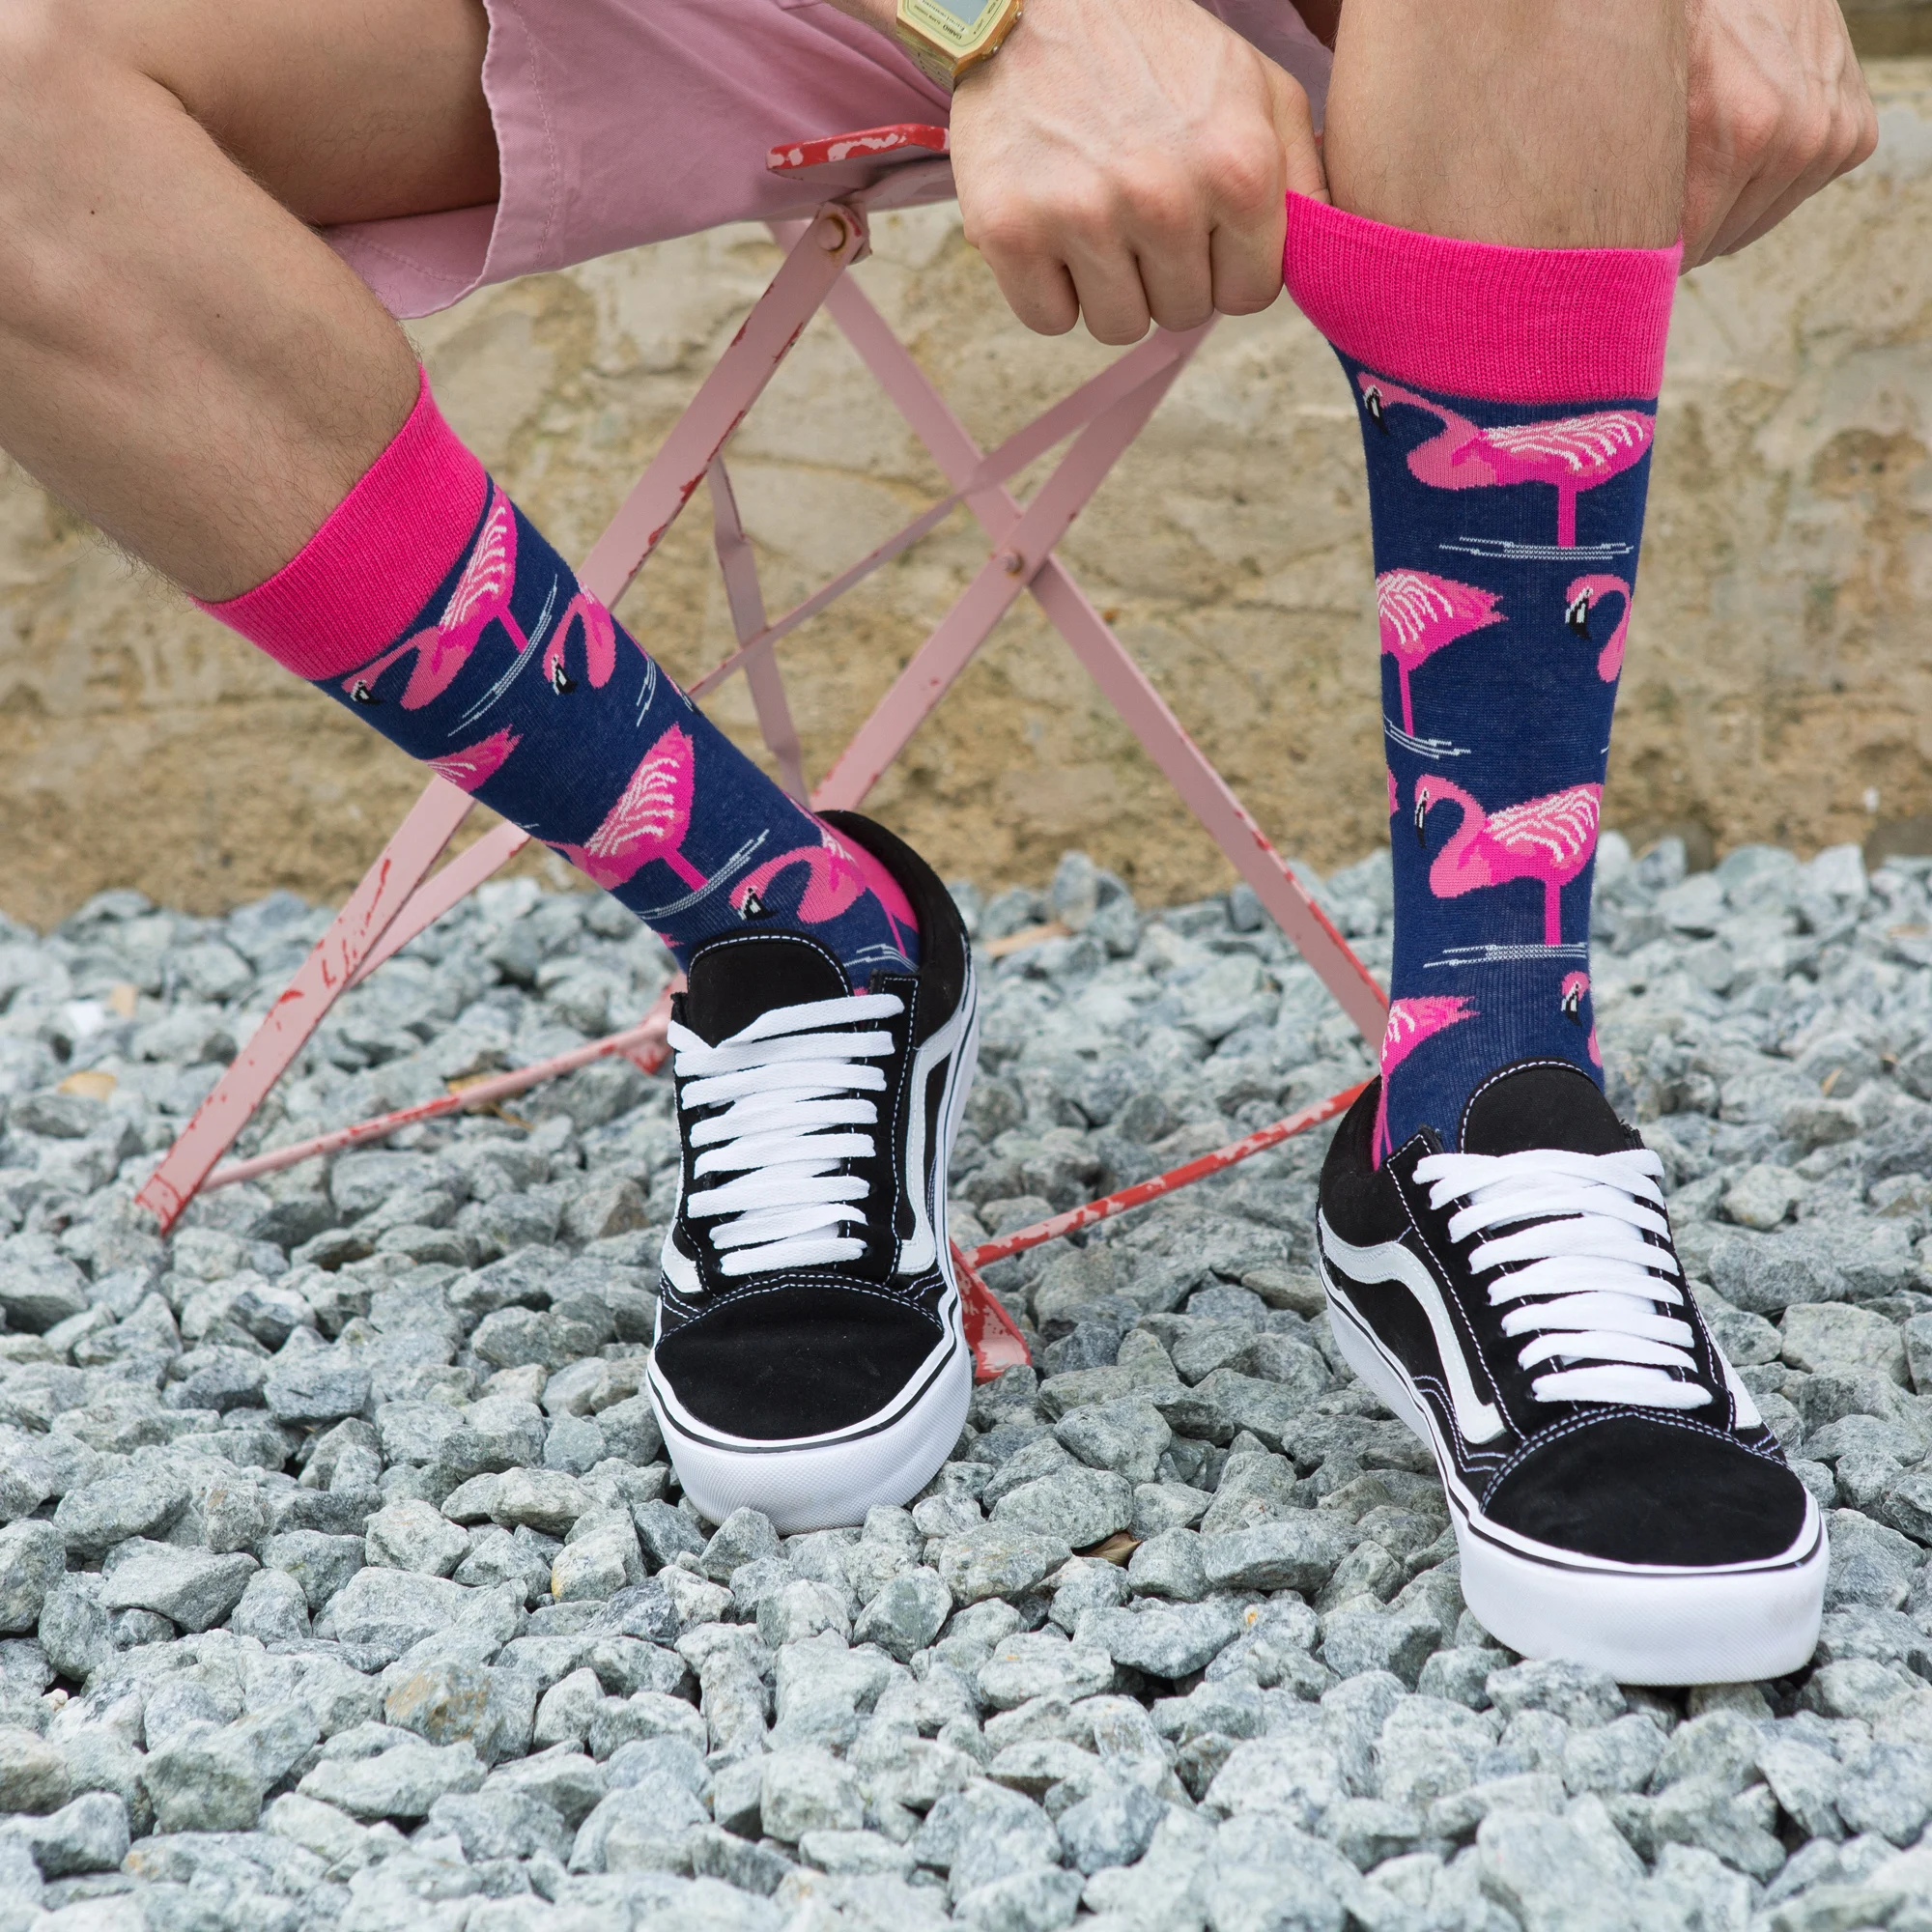 SANZETTI 5 пар/лот Красочные мужские индивидуальные носки хиптер дизайн чесаный хлопок платье Свадебные носки повседневные носки для вечеринок